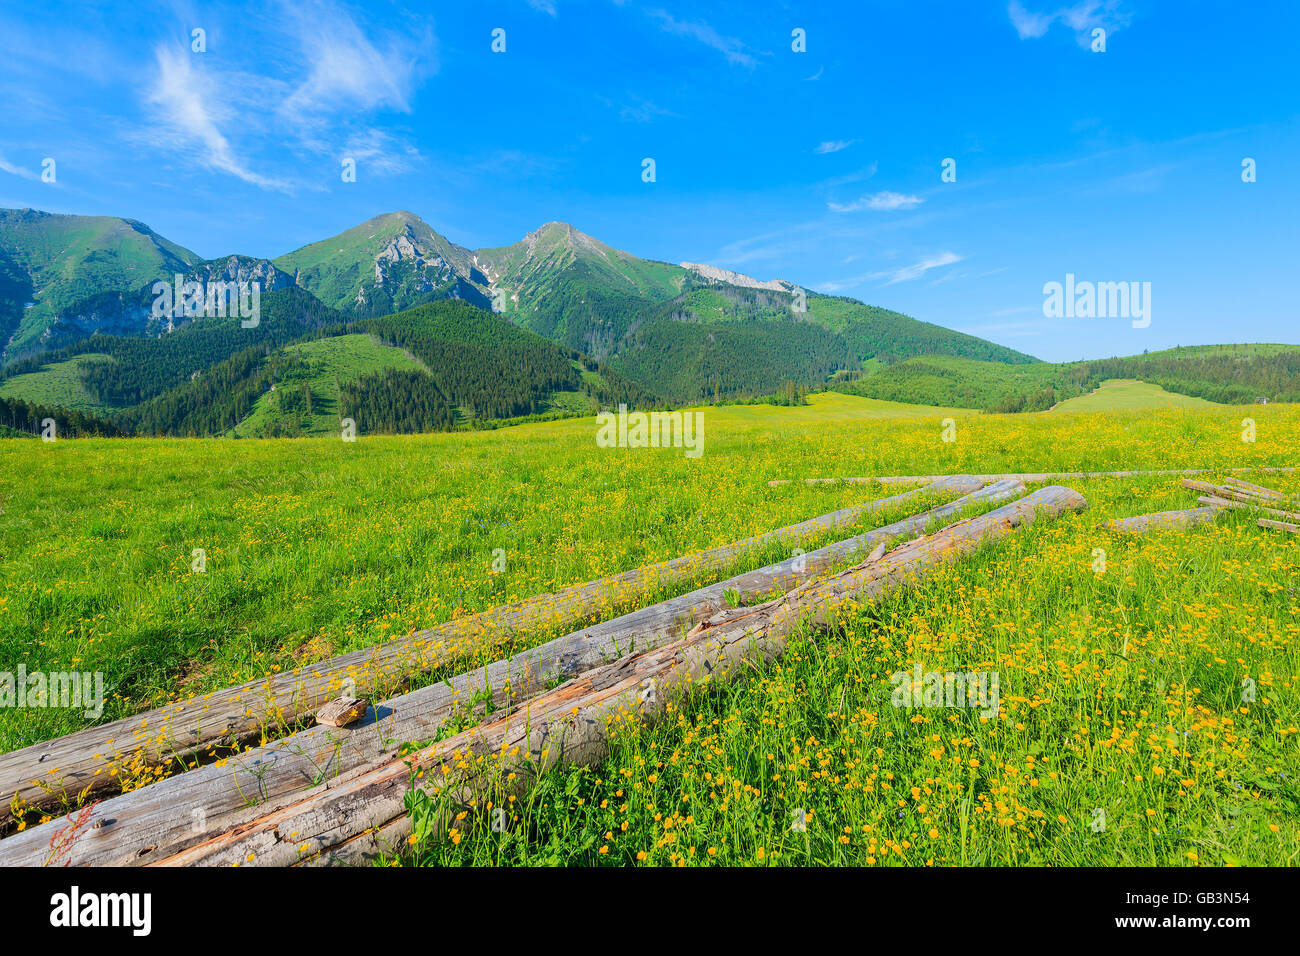 Bois de sciage sur vert prairie avec des fleurs en été paysage de montagnes Tatras, Slovaquie Banque D'Images